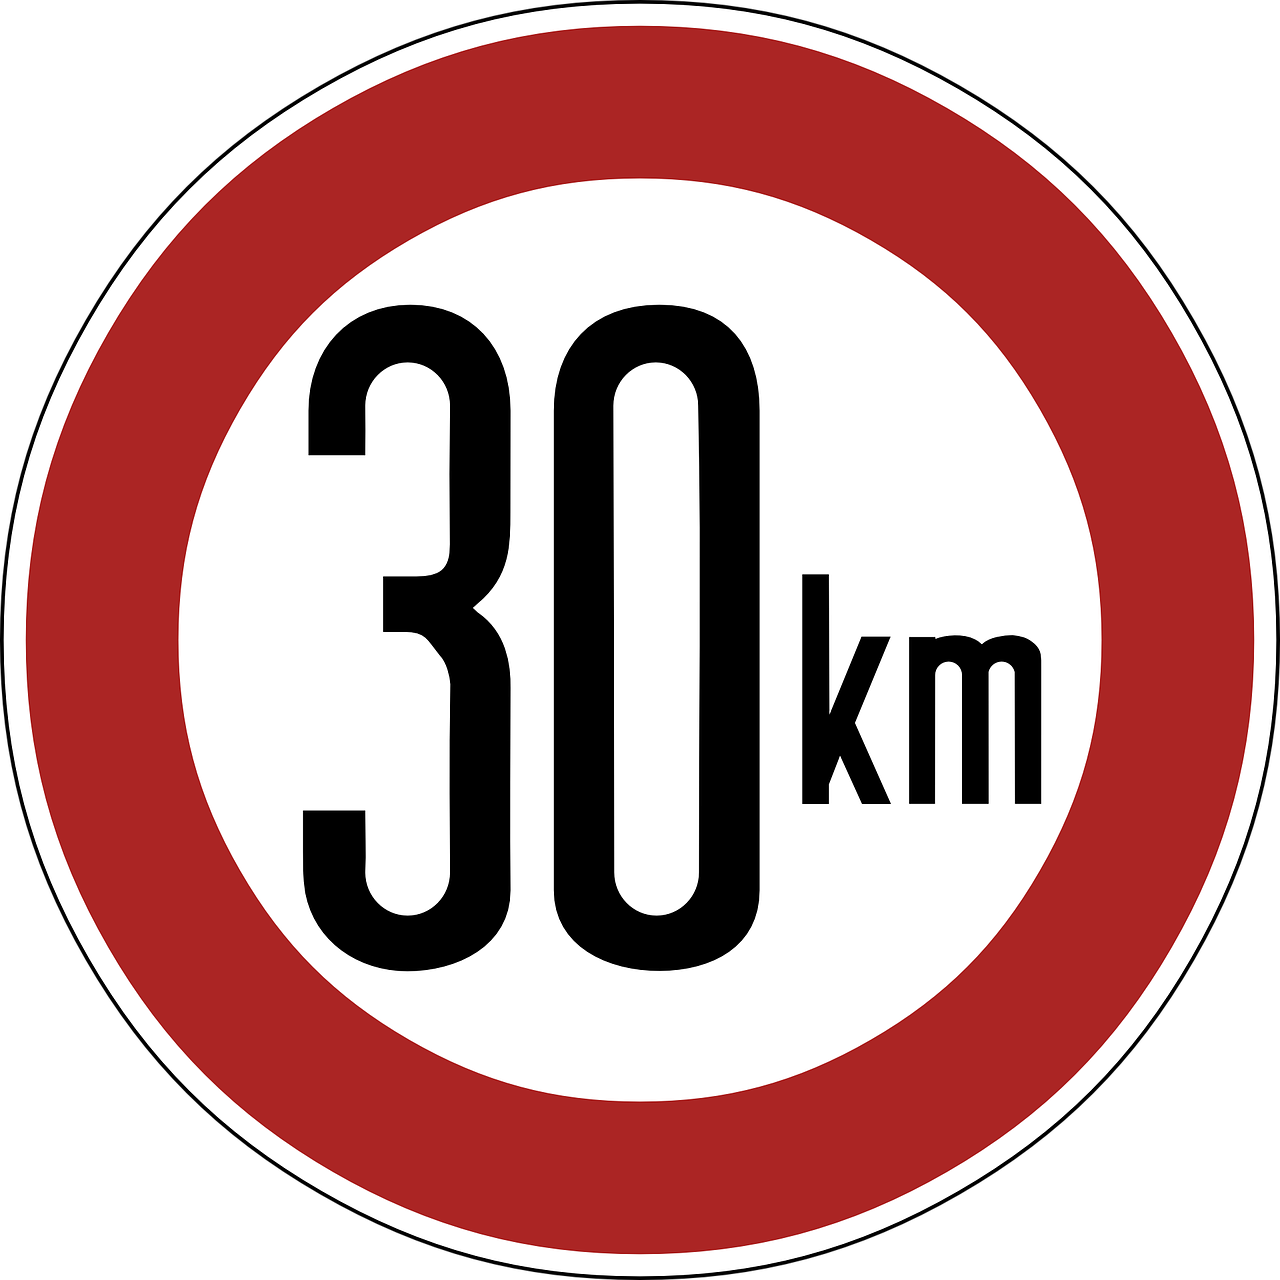 speed-limit-gf4c78a351_1280